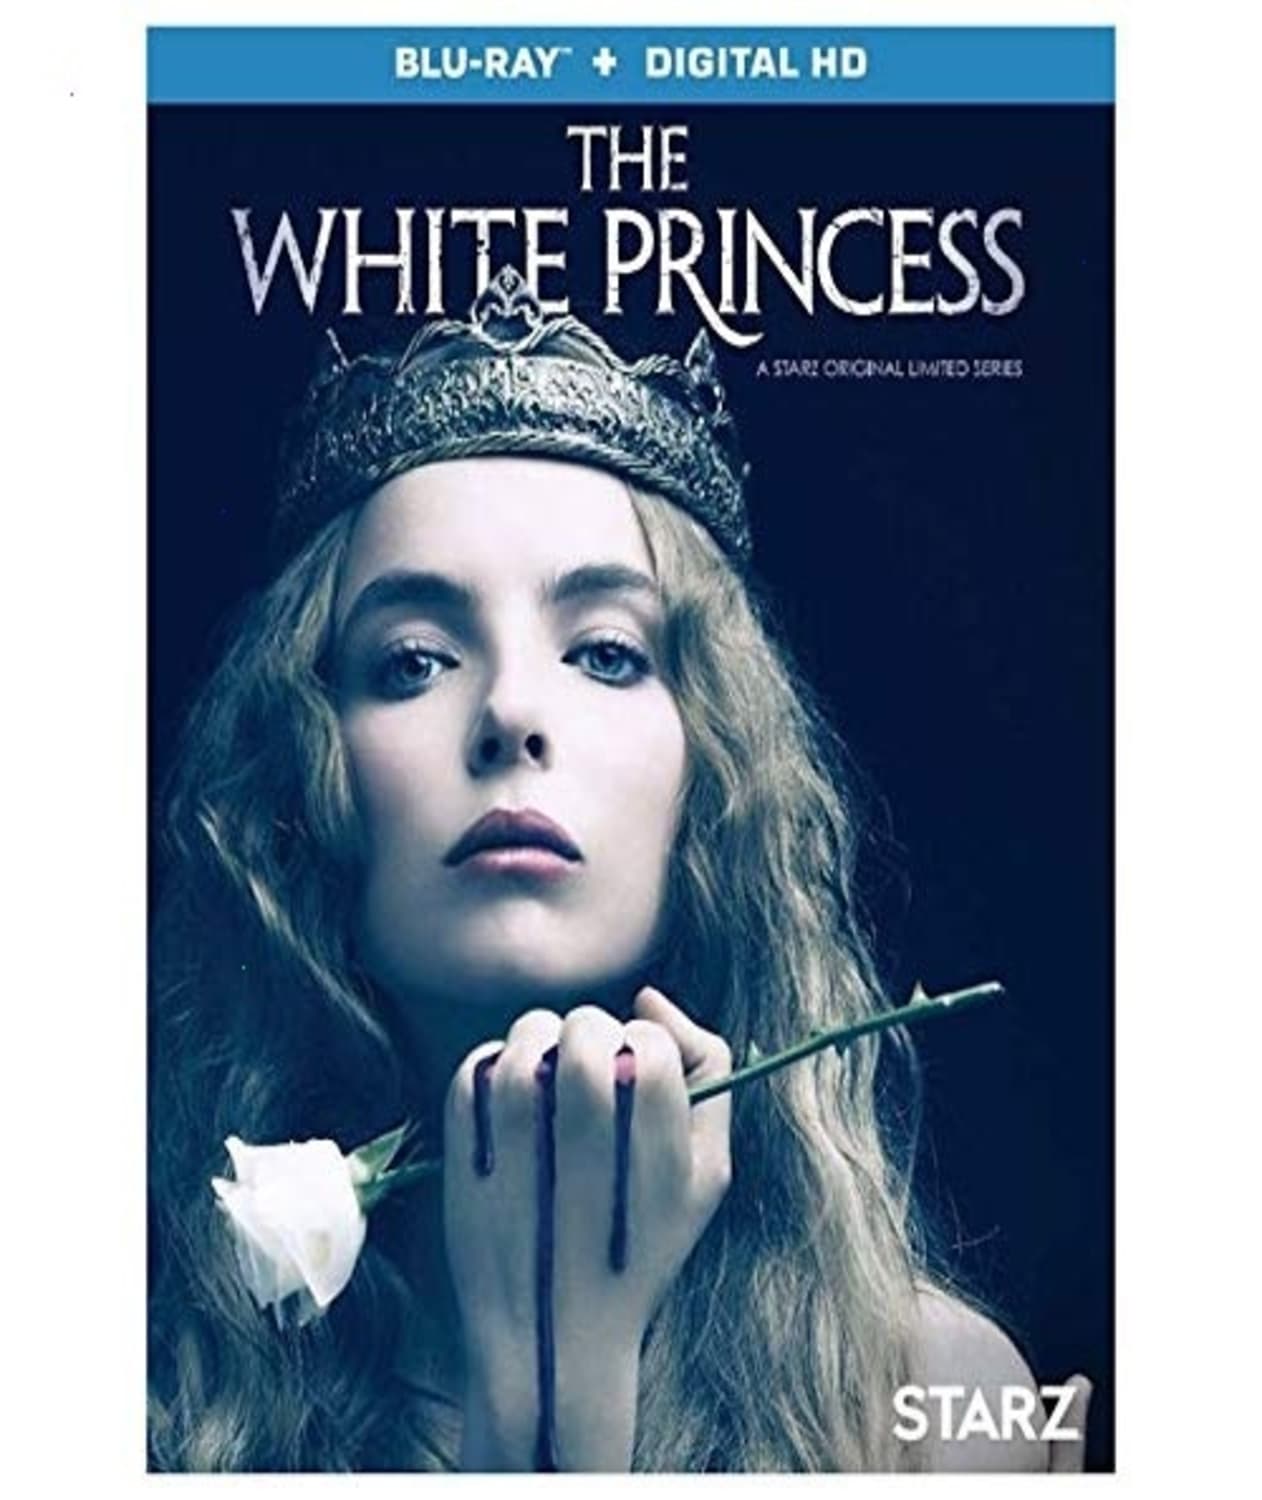 The White Princess (Blu-ray) on MovieShack